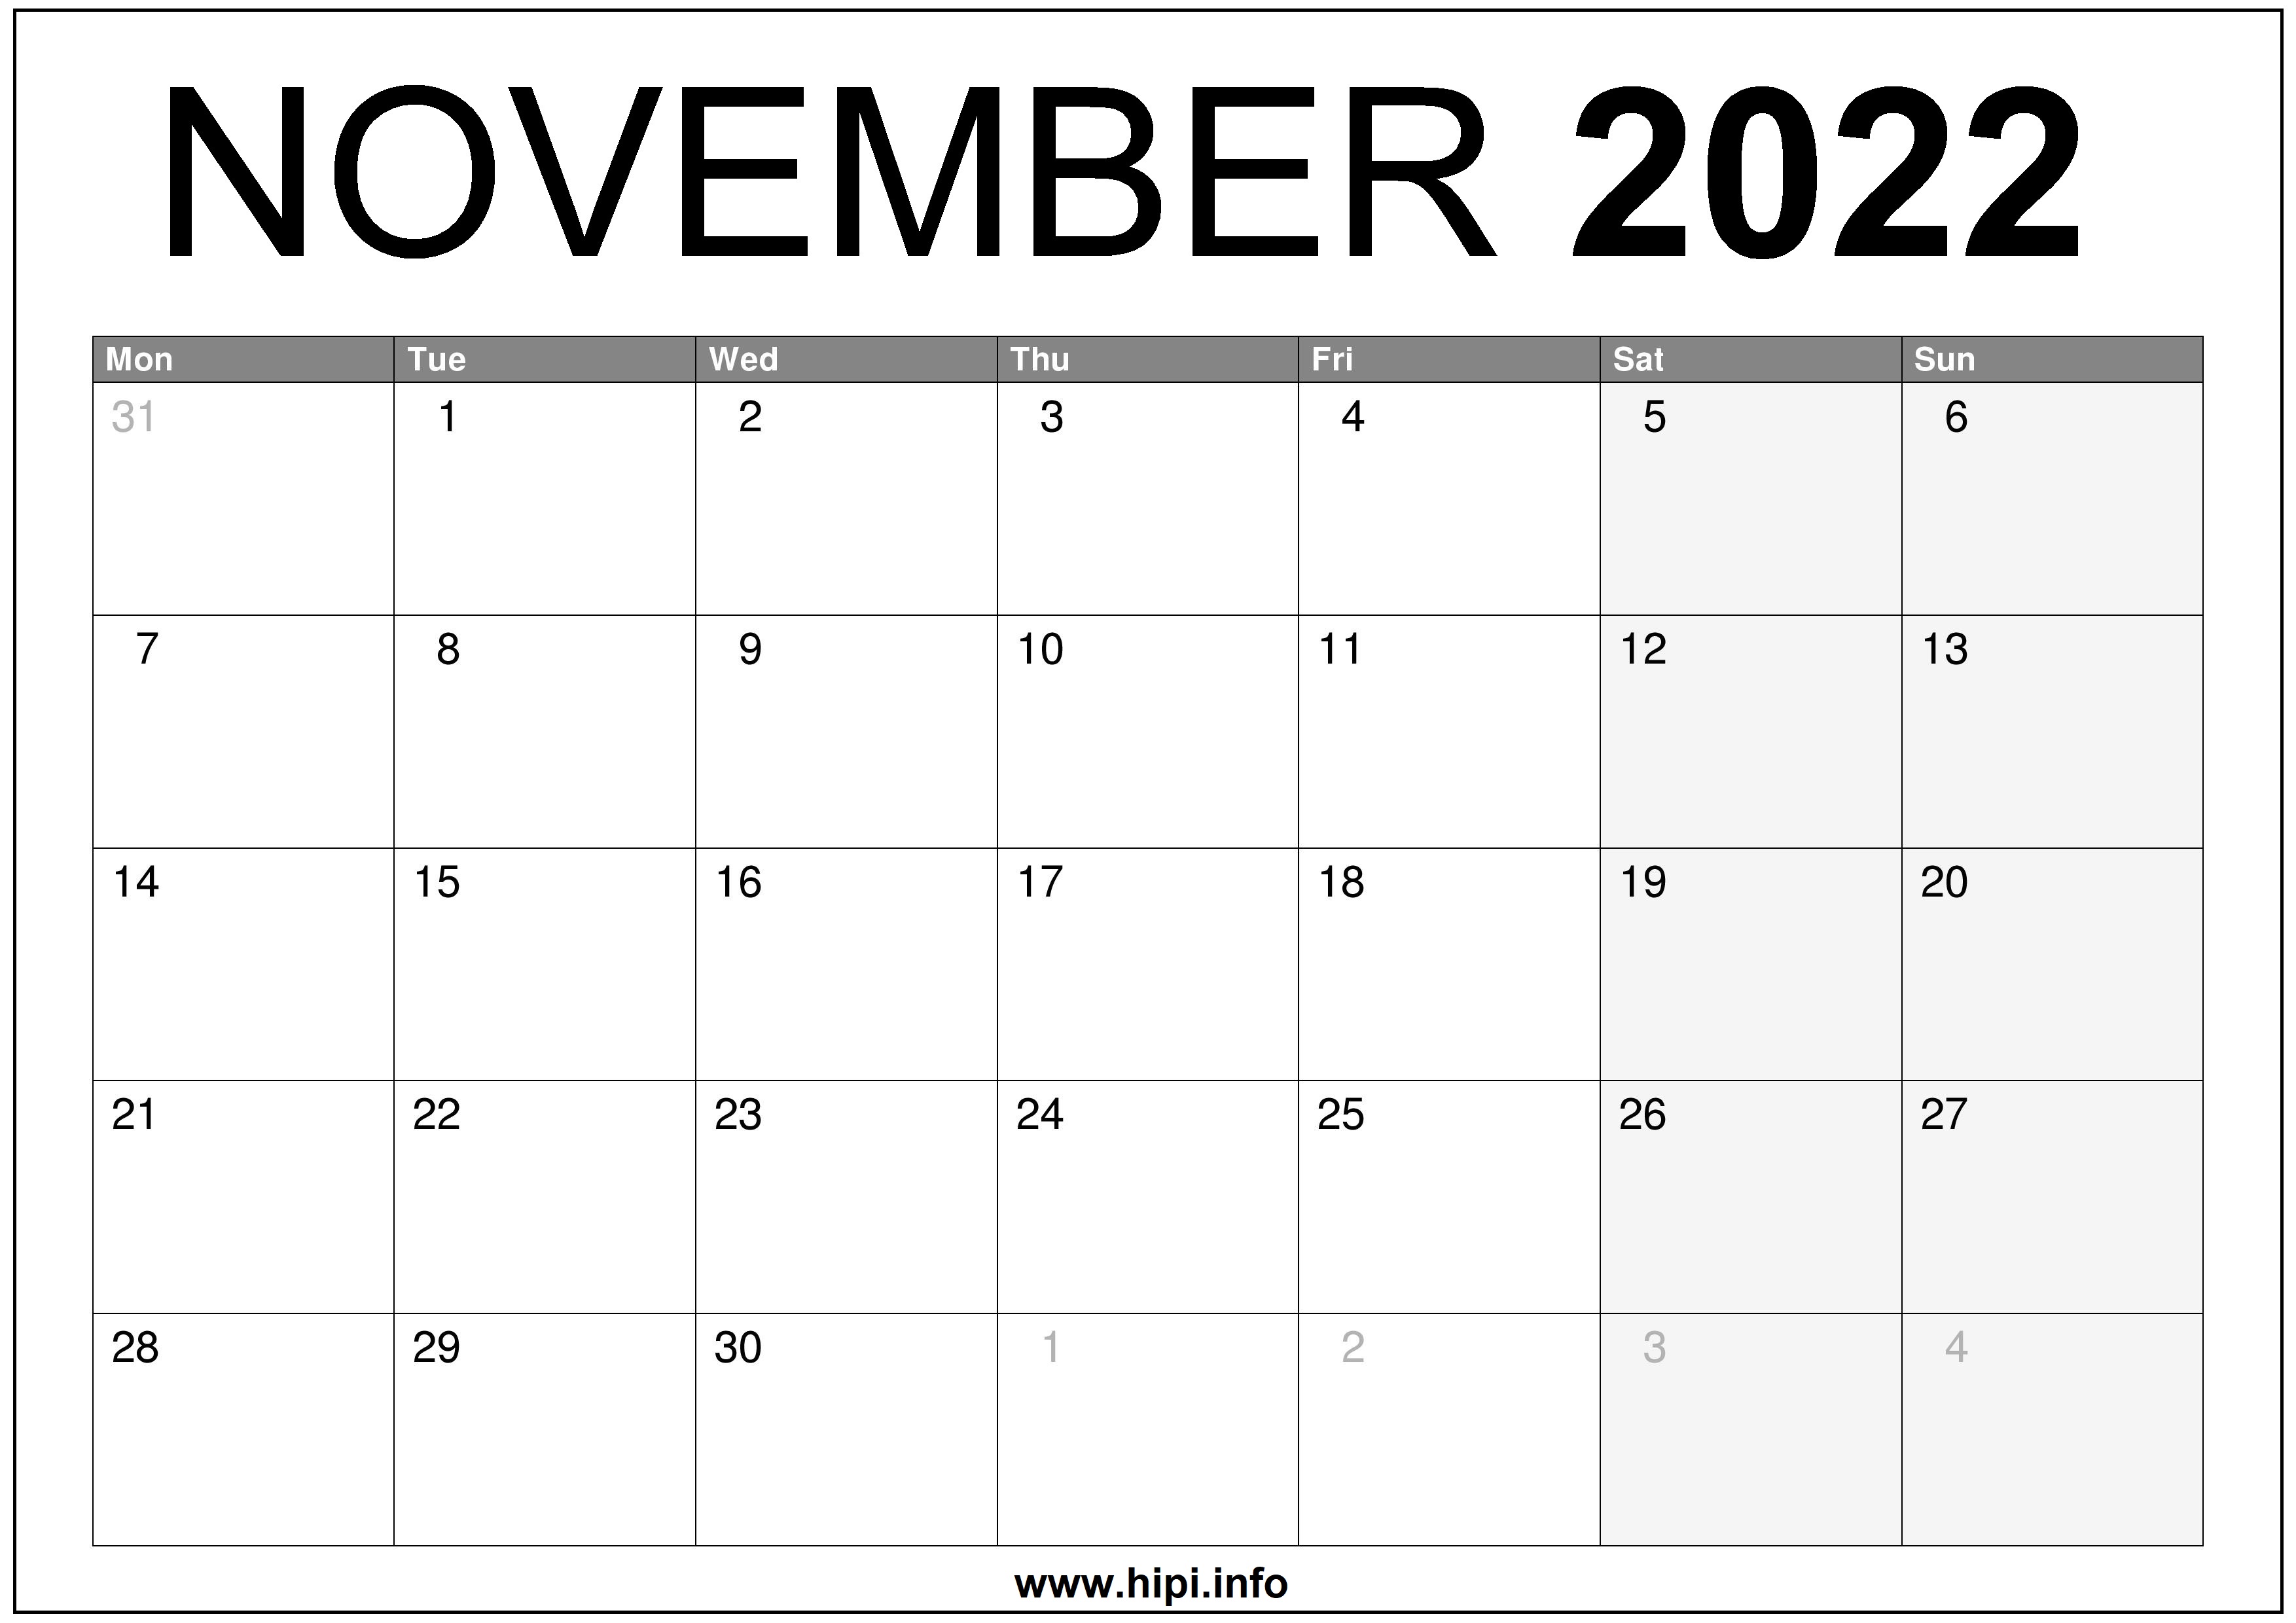 November 2022 Calendar Printable November 2022 Uk Calendar Printable Free - Hipi.info | Calendars Printable  Free